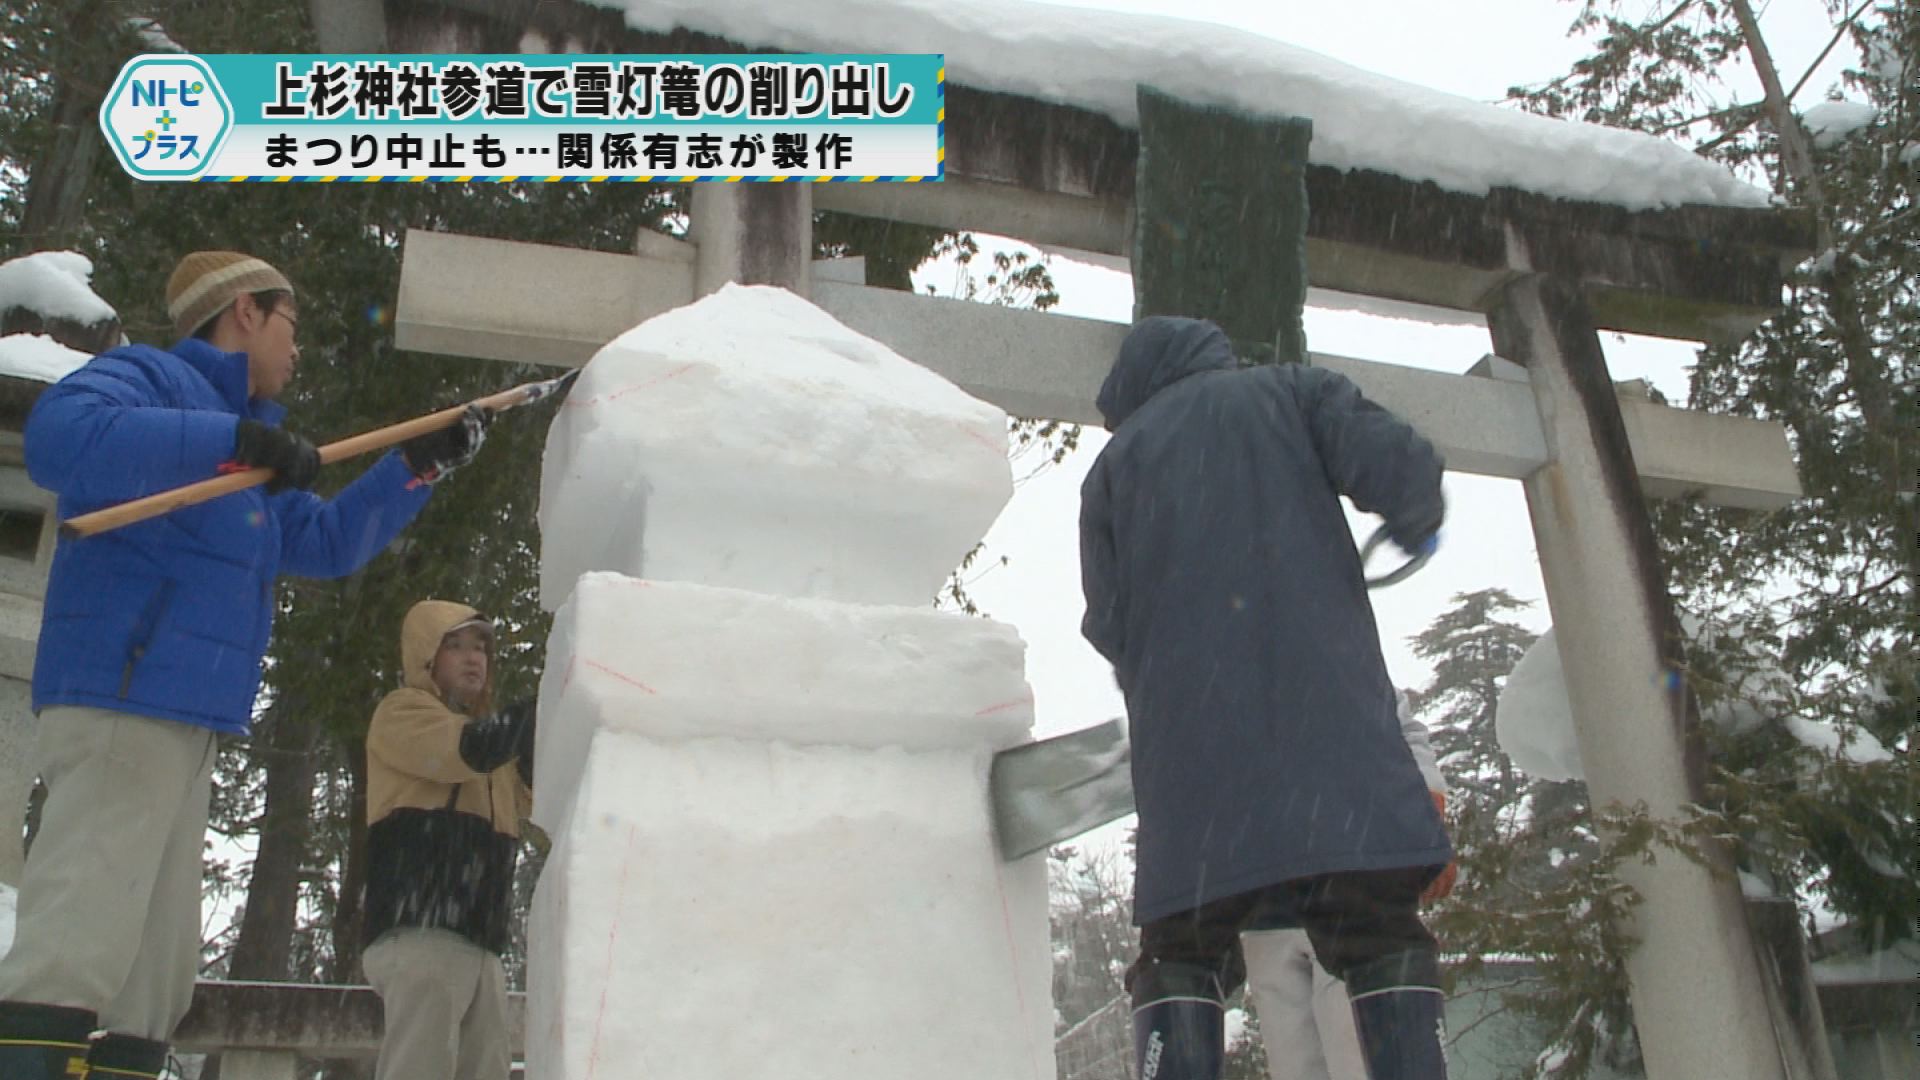 「上杉神社参道で雪灯篭の削り出し」まつり中止も…関係有志が製作